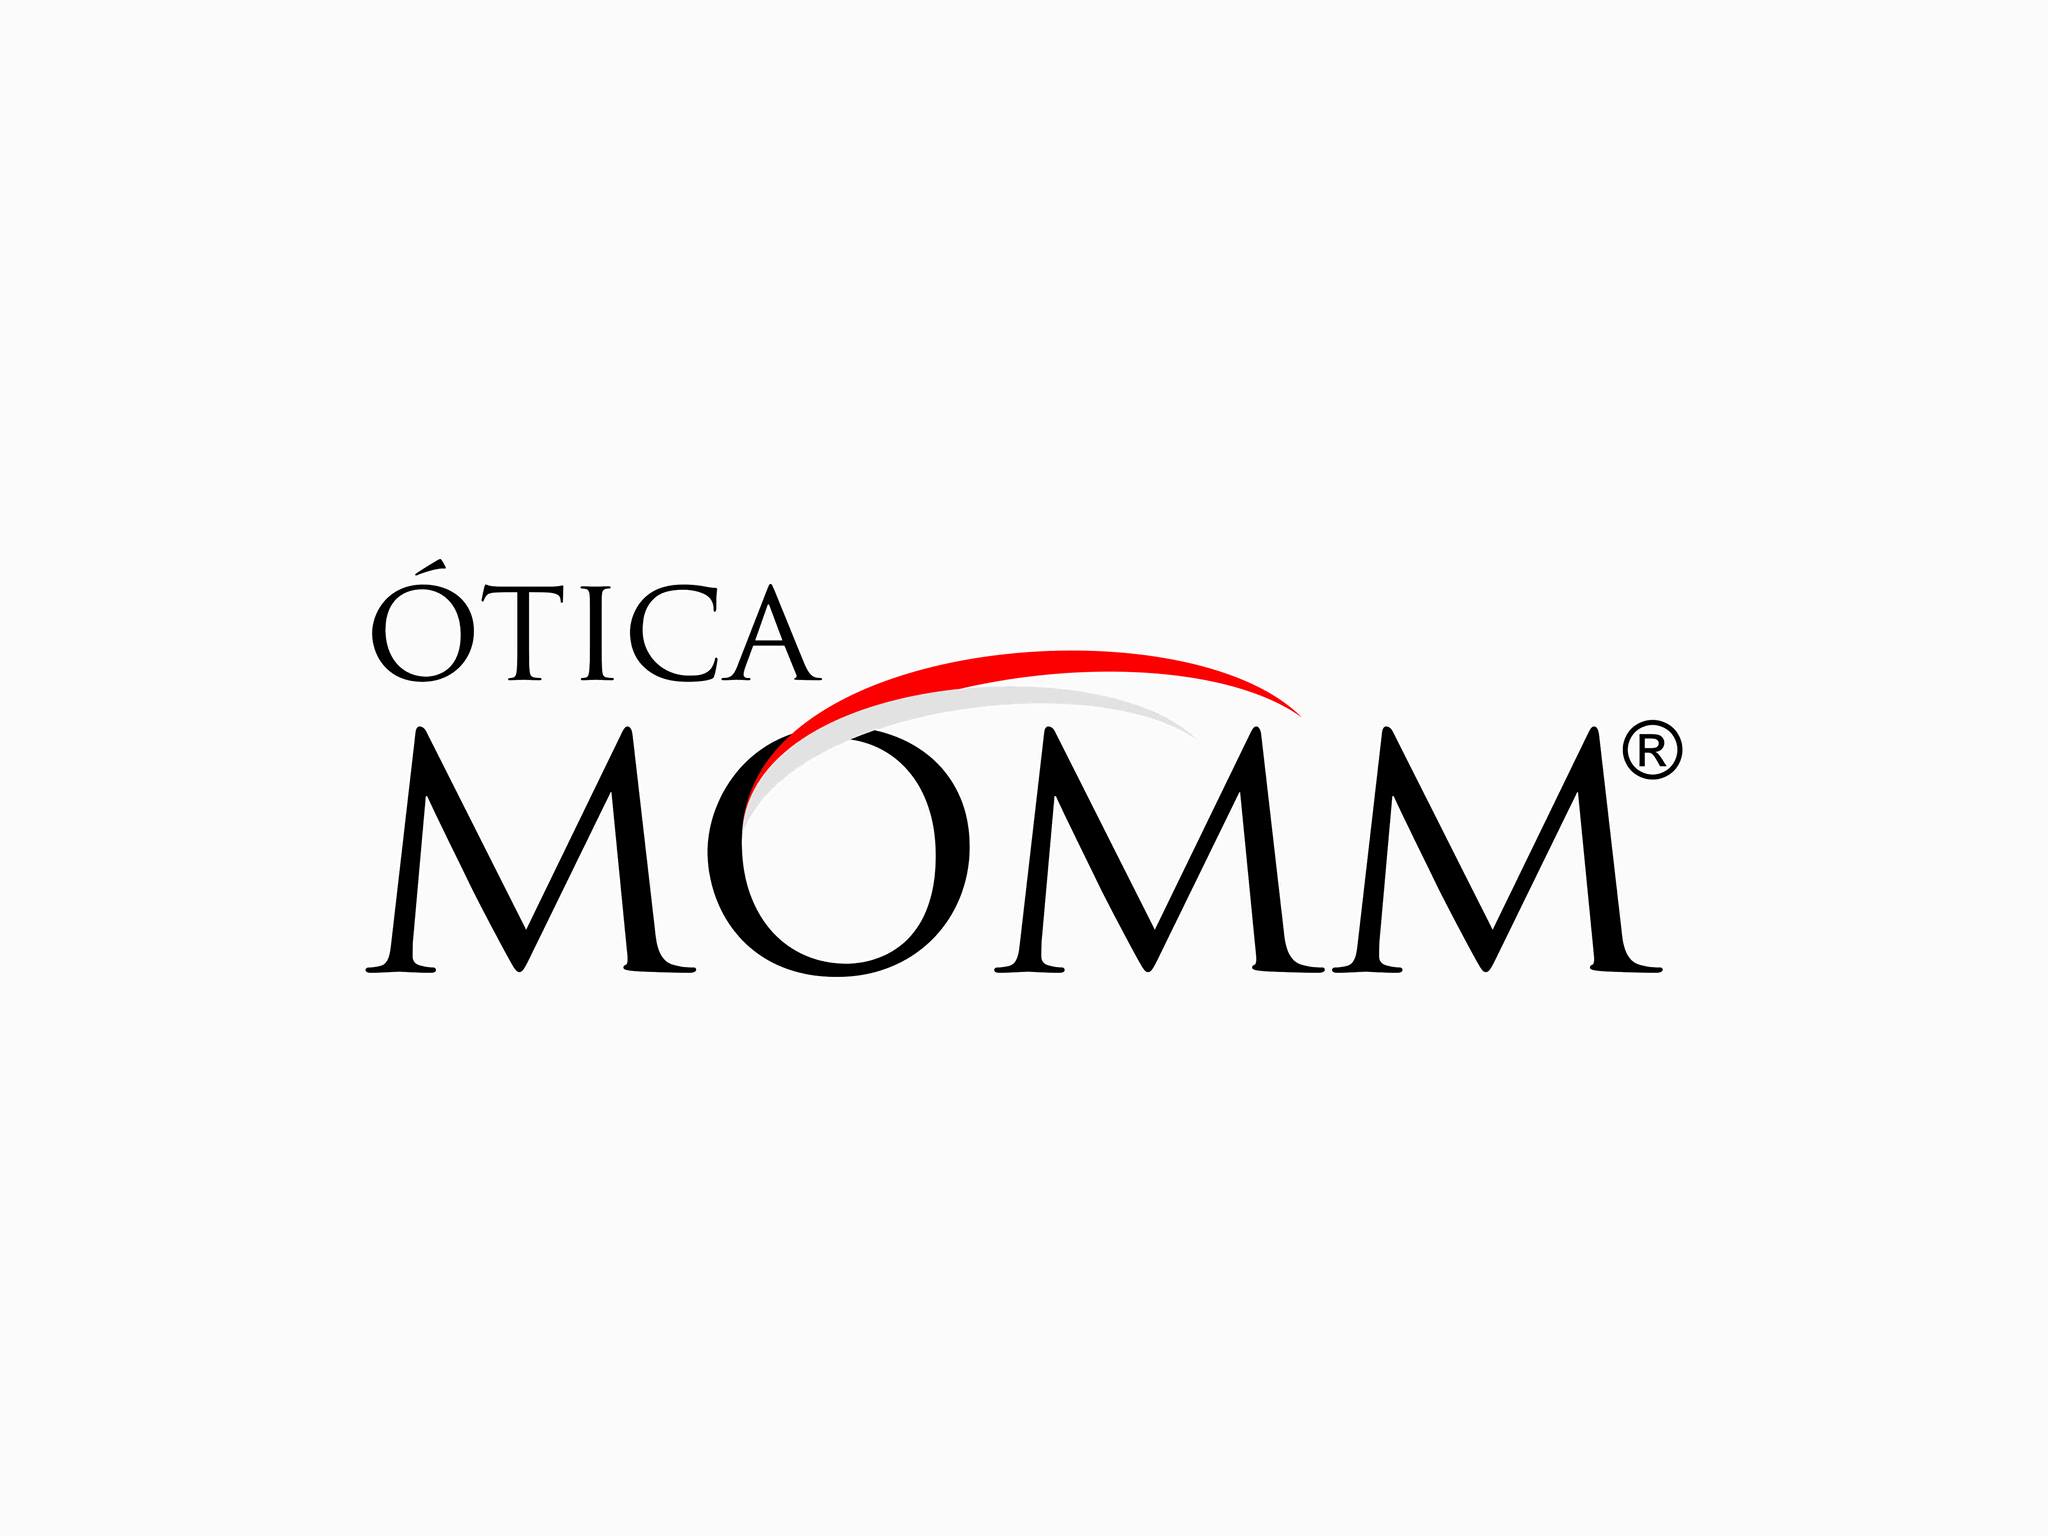 OTICA MOMM